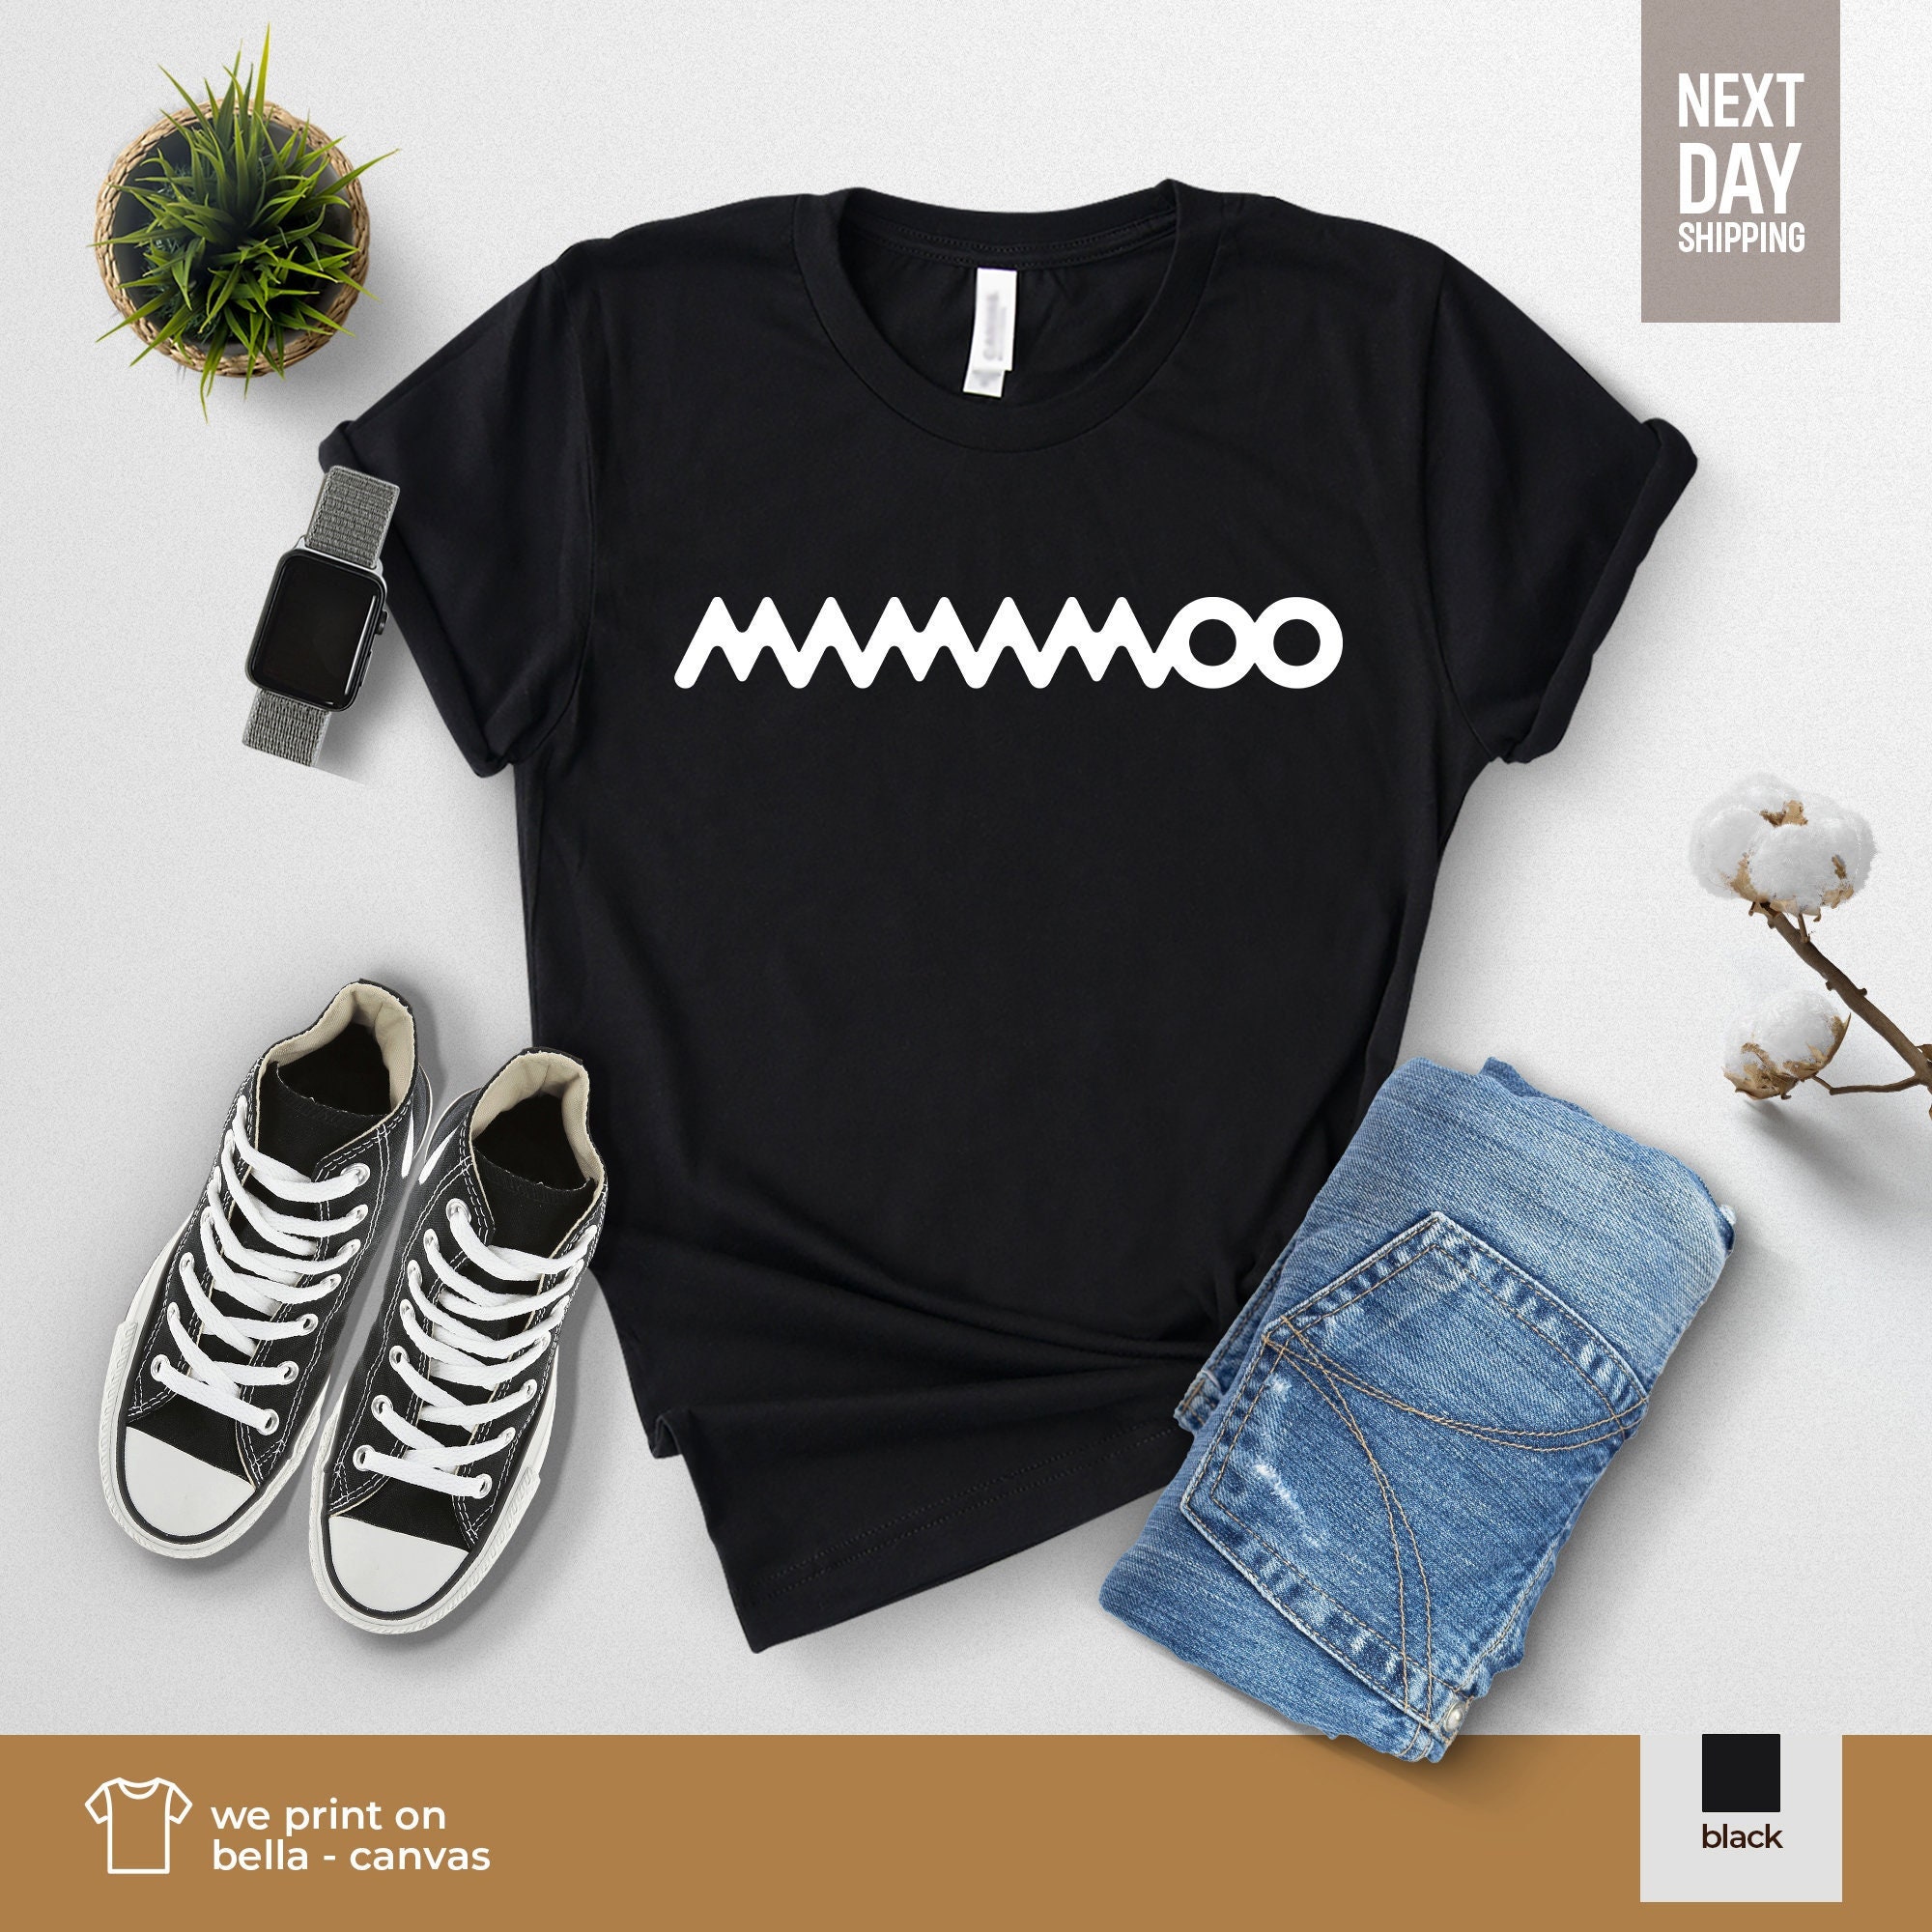 Mamamoo Fandom Moomoo Short-sleeve Unisex T-shirt Fan Made 